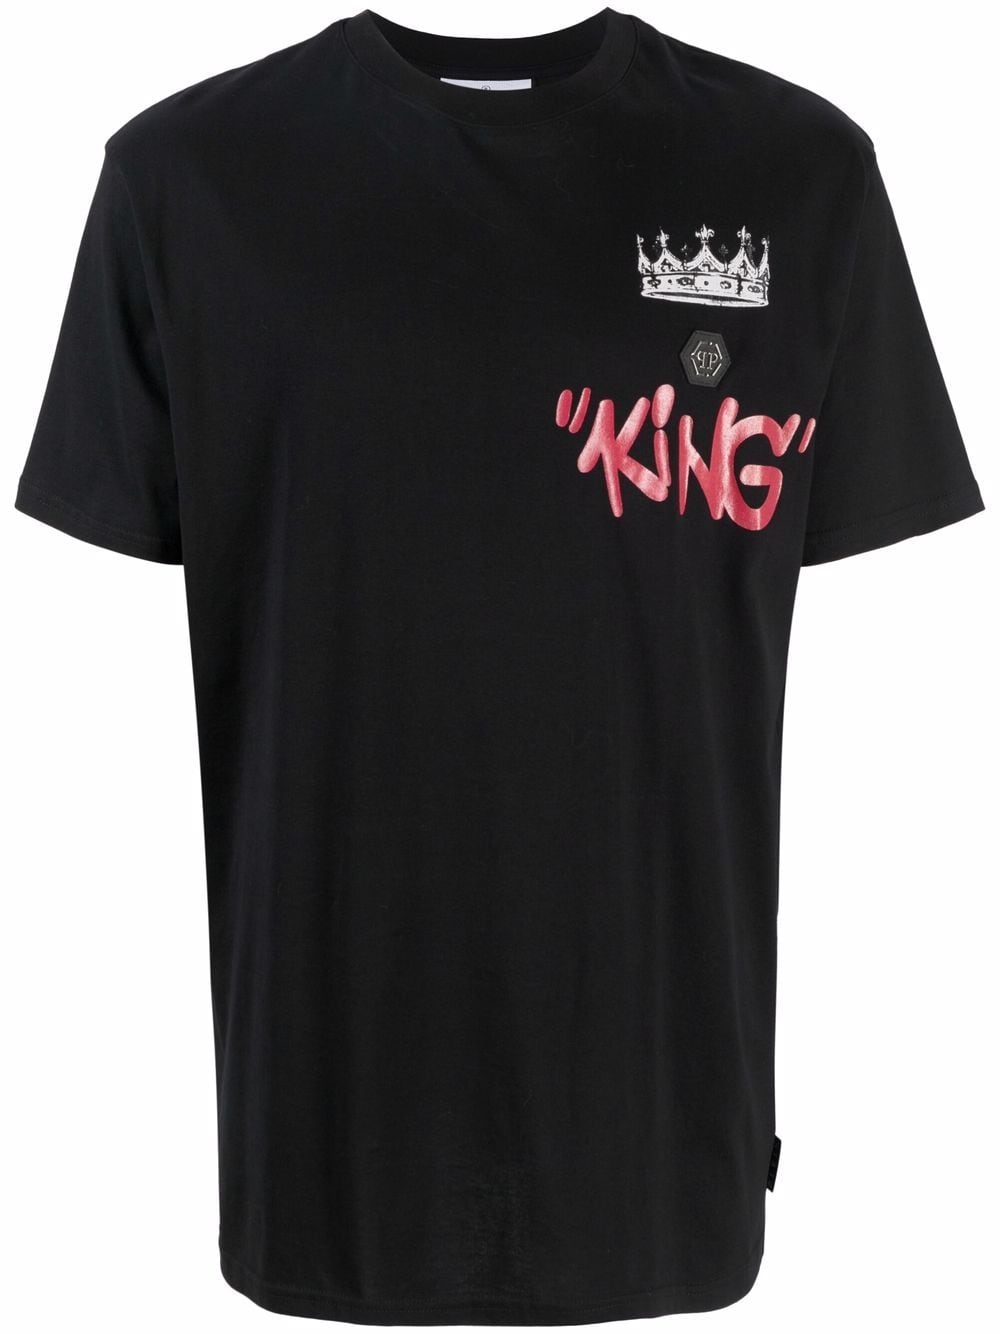 фото Philipp plein футболка king с логотипом